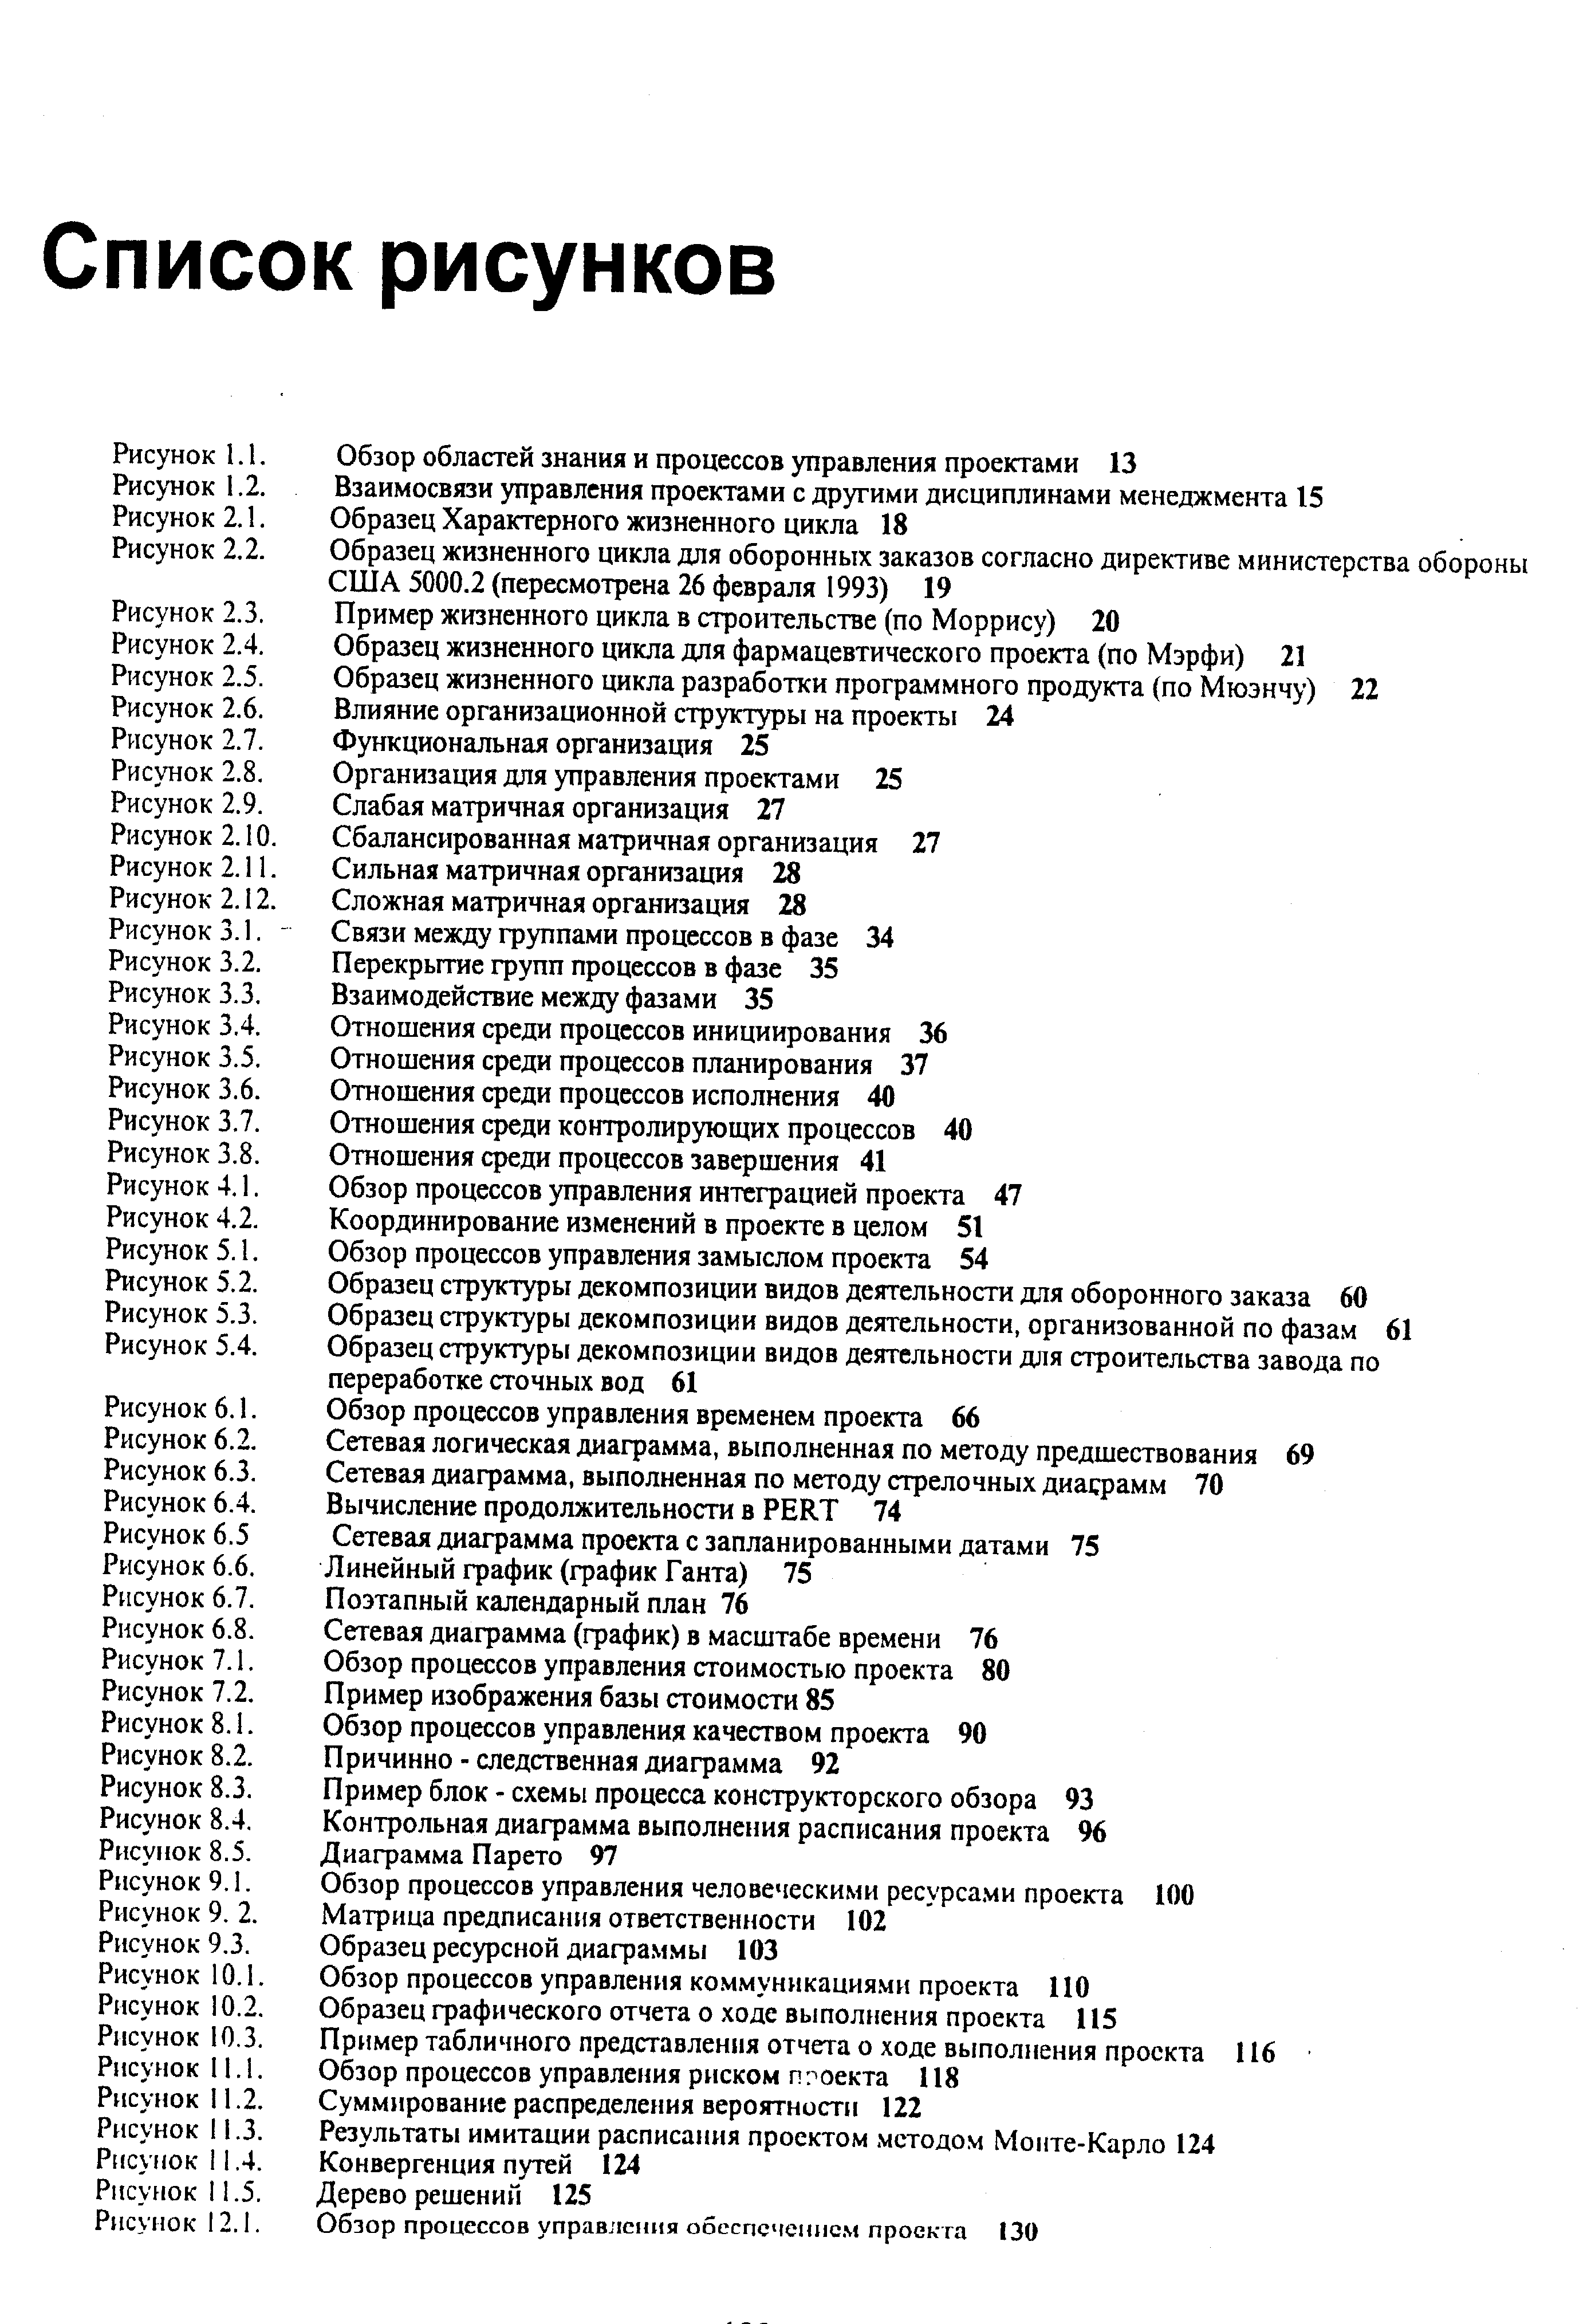 Рисунок 5.3. Образец структуры декомпозиции видов деятельности, организованной по фазам 61
